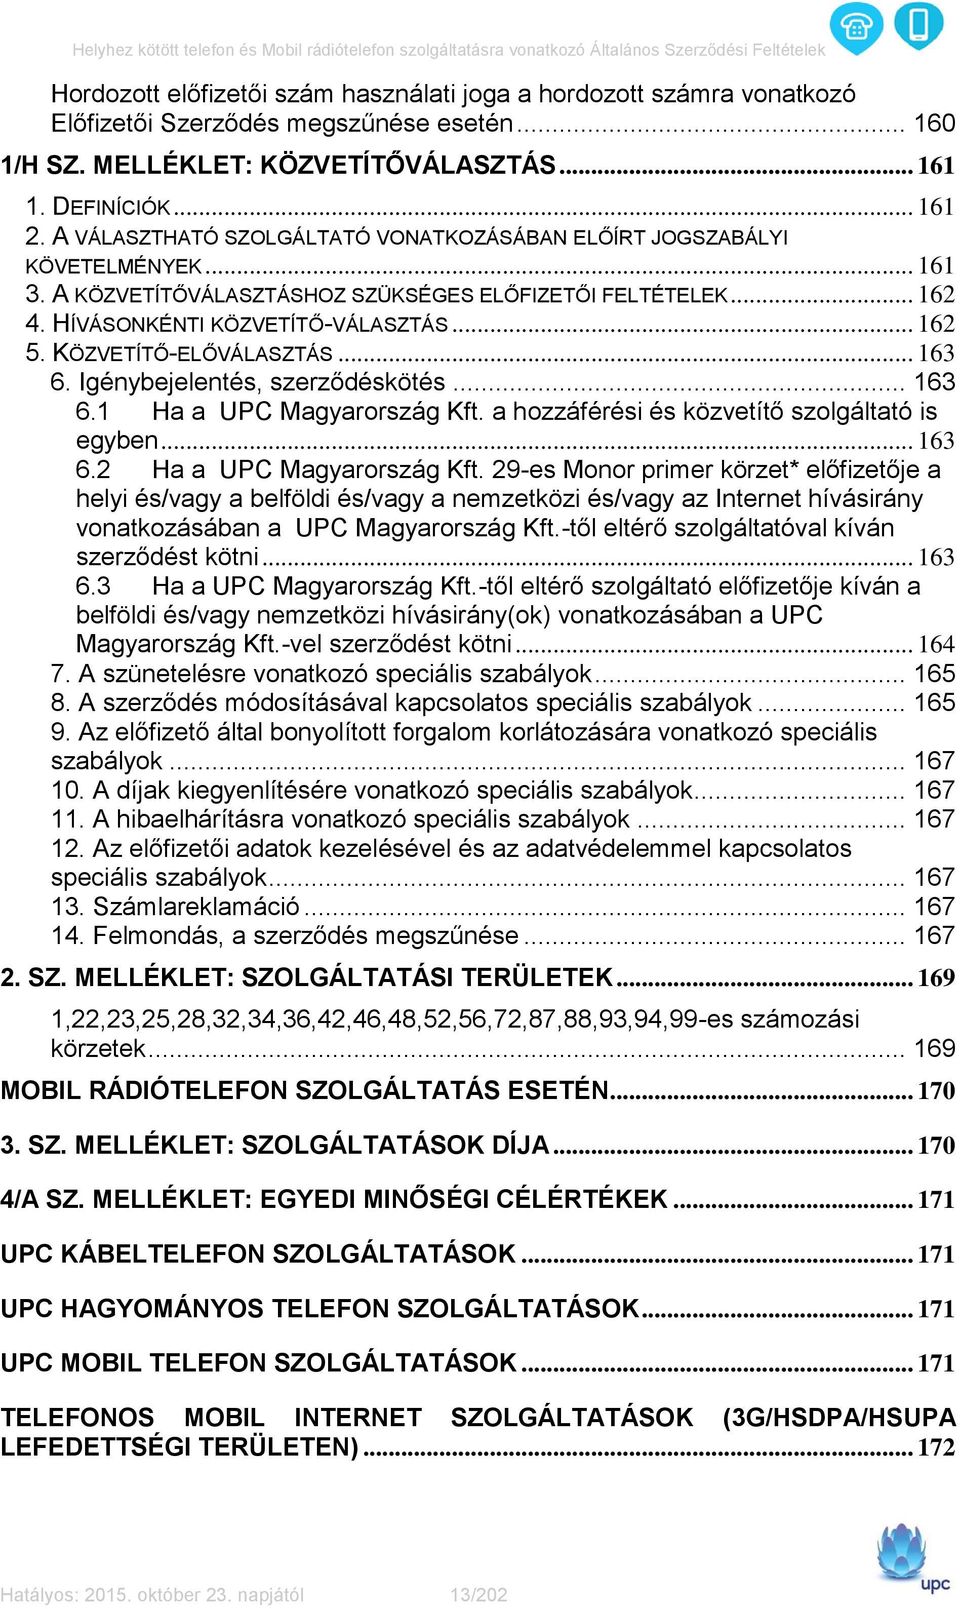 KÖZVETÍTŐ-ELŐVÁLASZTÁS... 163 6. Igénybejelentés, szerződéskötés... 163 6.1 Ha a UPC Magyarország Kft. a hozzáférési és közvetítő szolgáltató is egyben... 163 6.2 Ha a UPC Magyarország Kft.